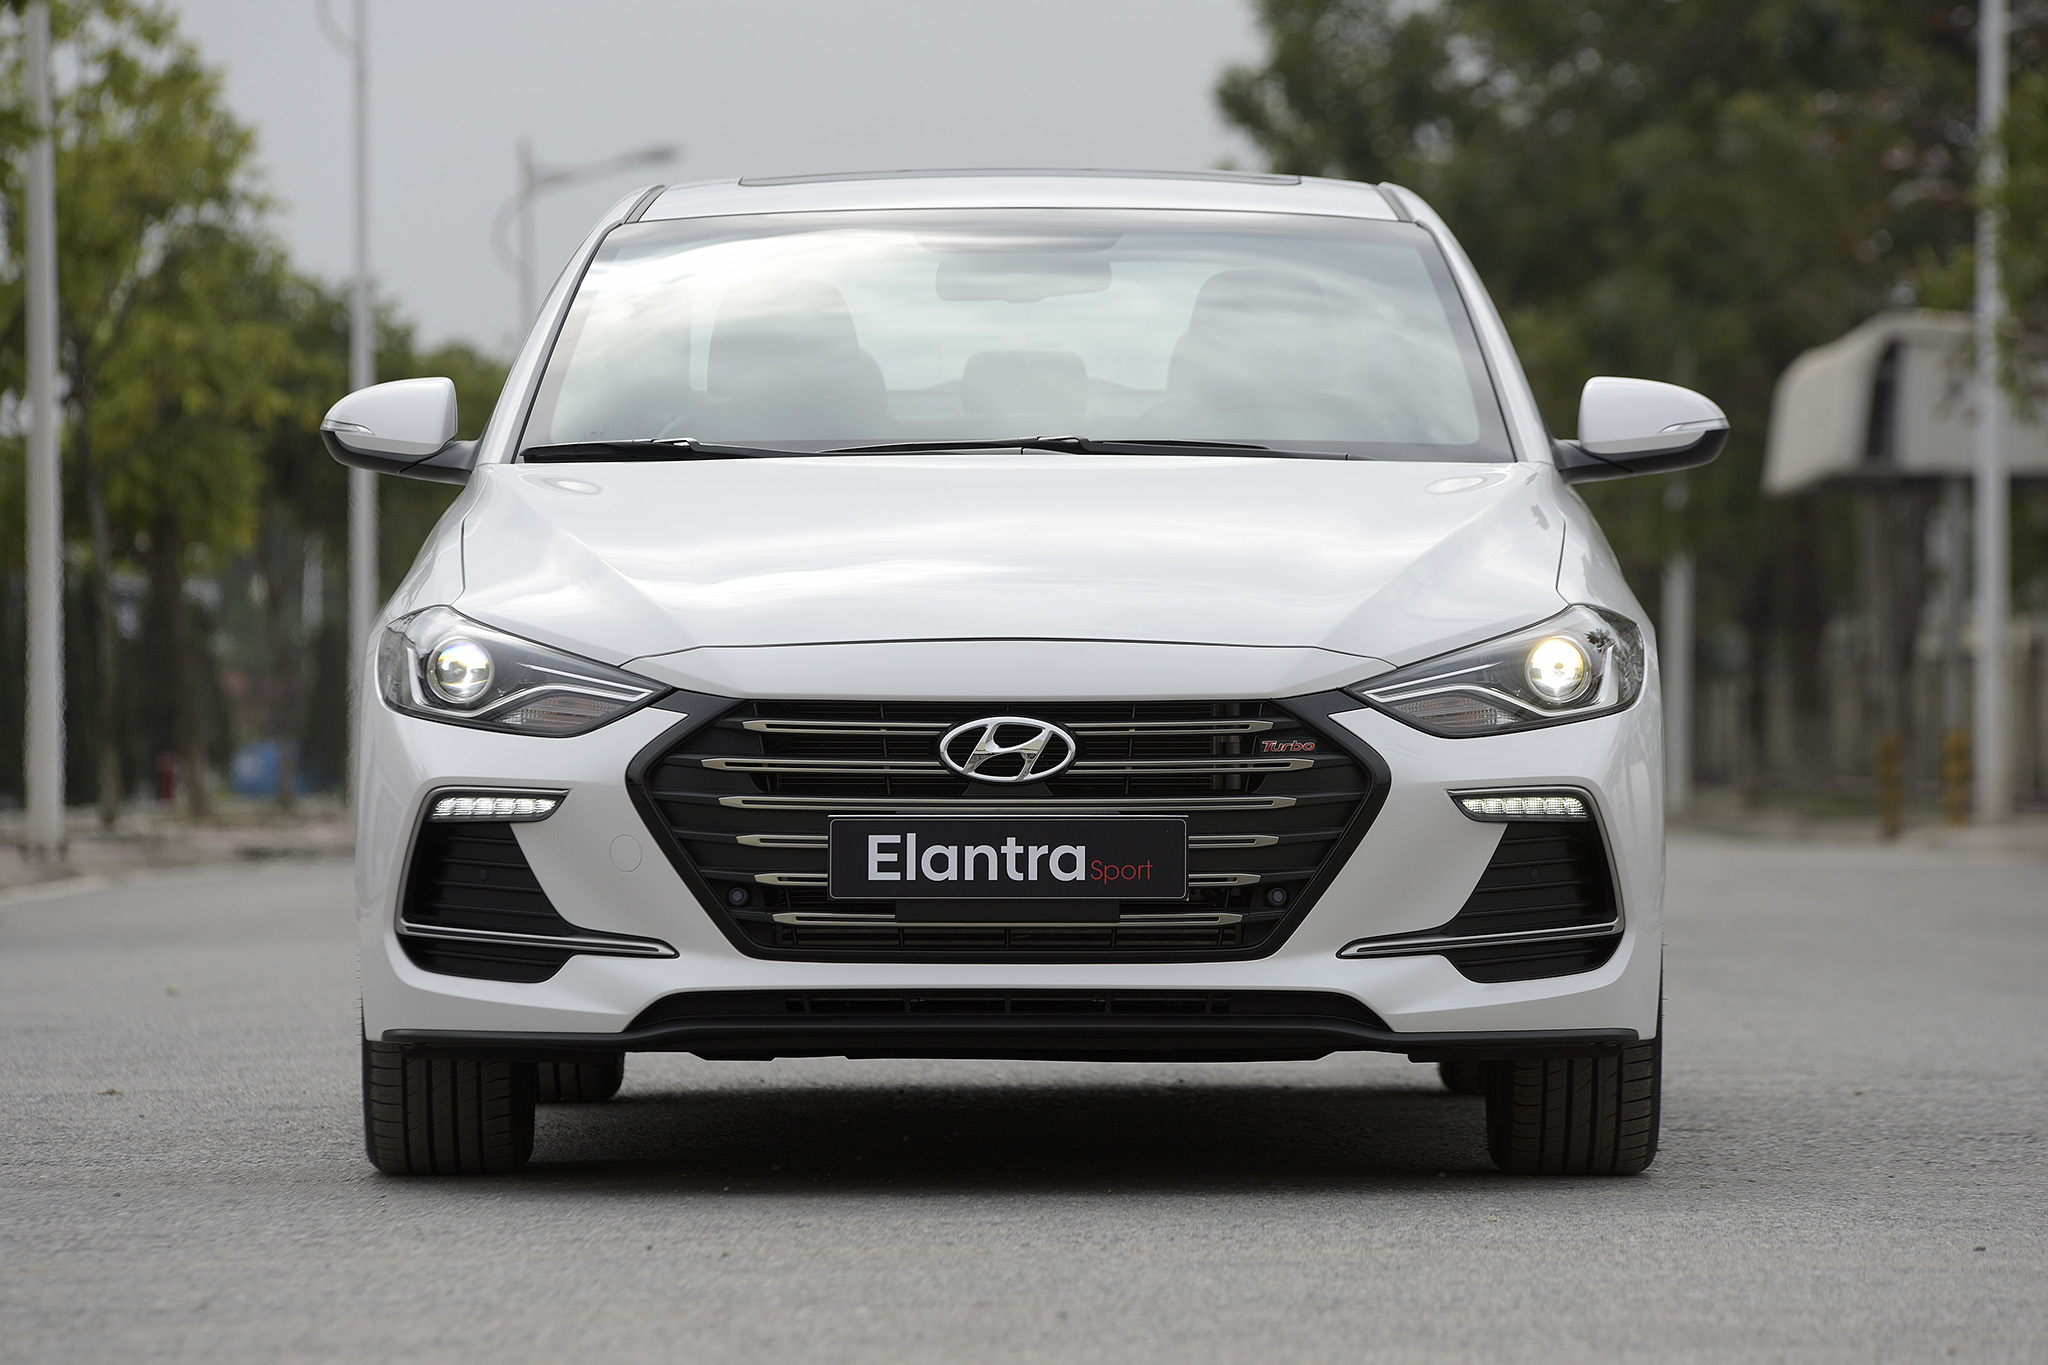 Mua bán rao vặt: Hyundai Vinh chính thức giới thiệu mẫu xe Hyundai Elantra Sport  Hyundai-elantra-sport